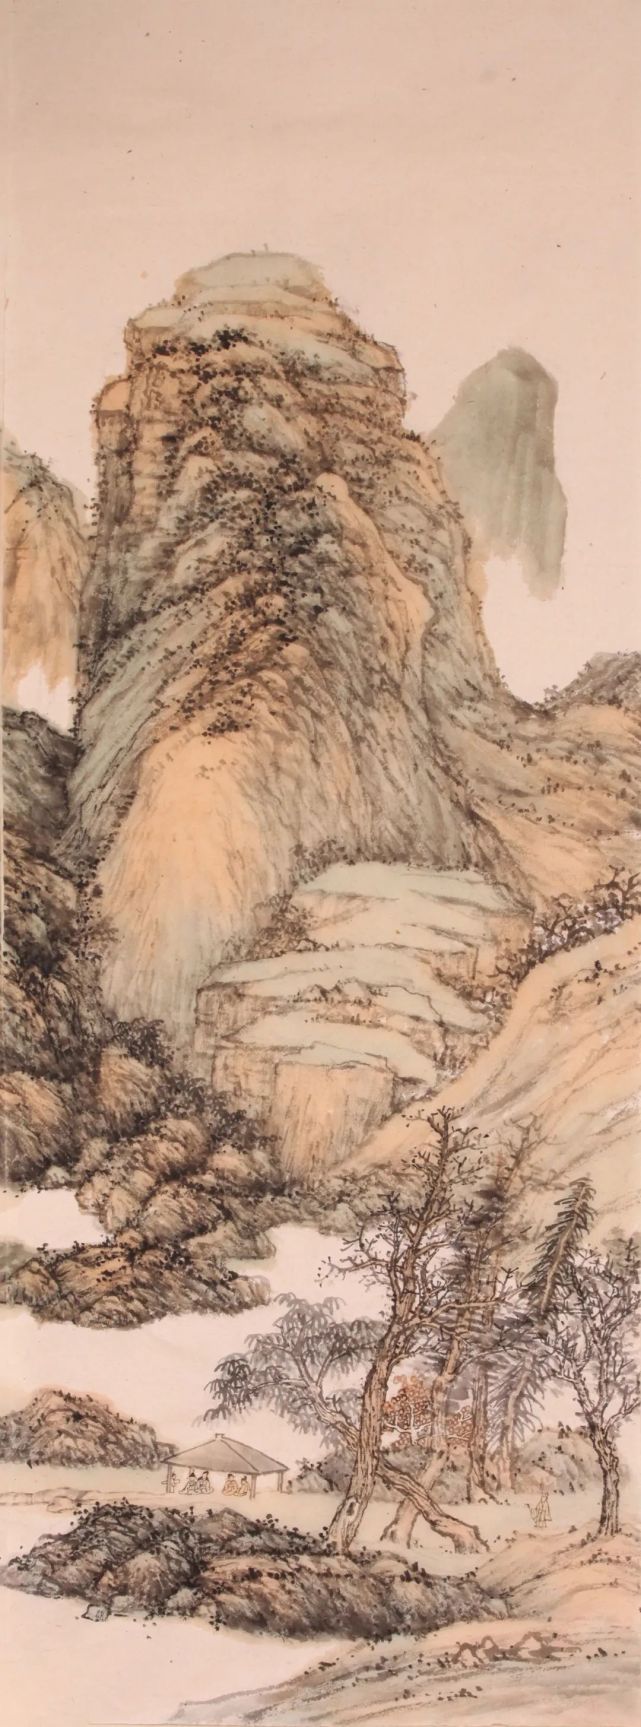 浅绛山水画 代表作图片